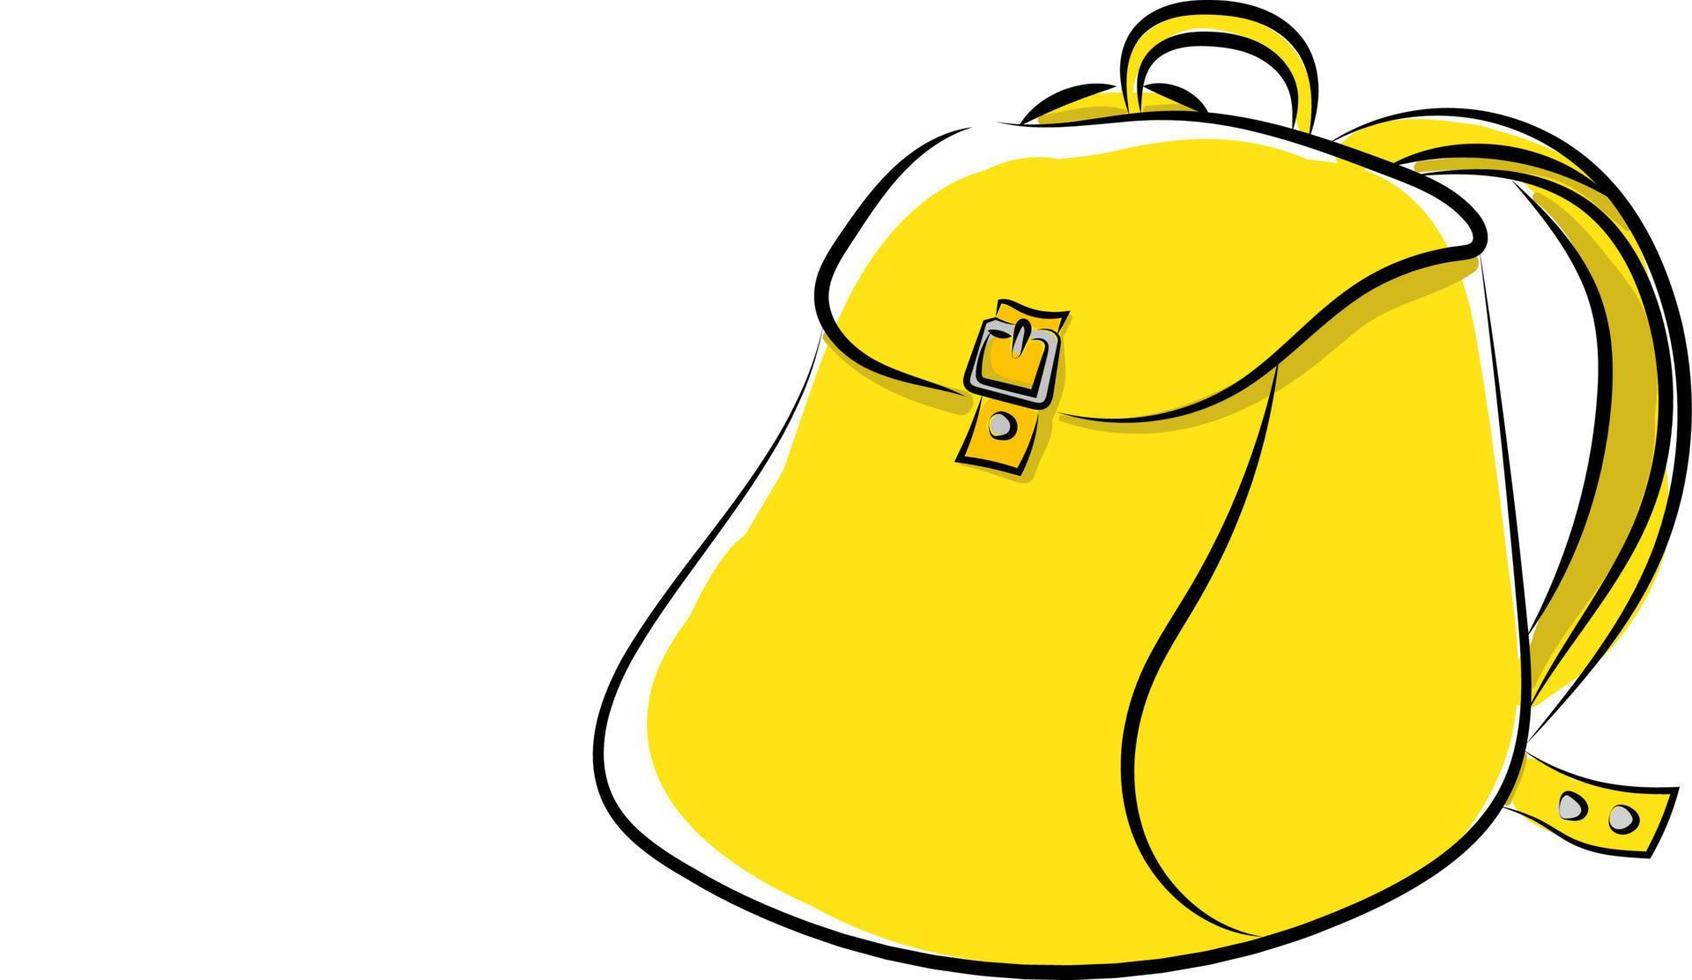 sac à dos jaune, illustration, vecteur sur fond blanc.